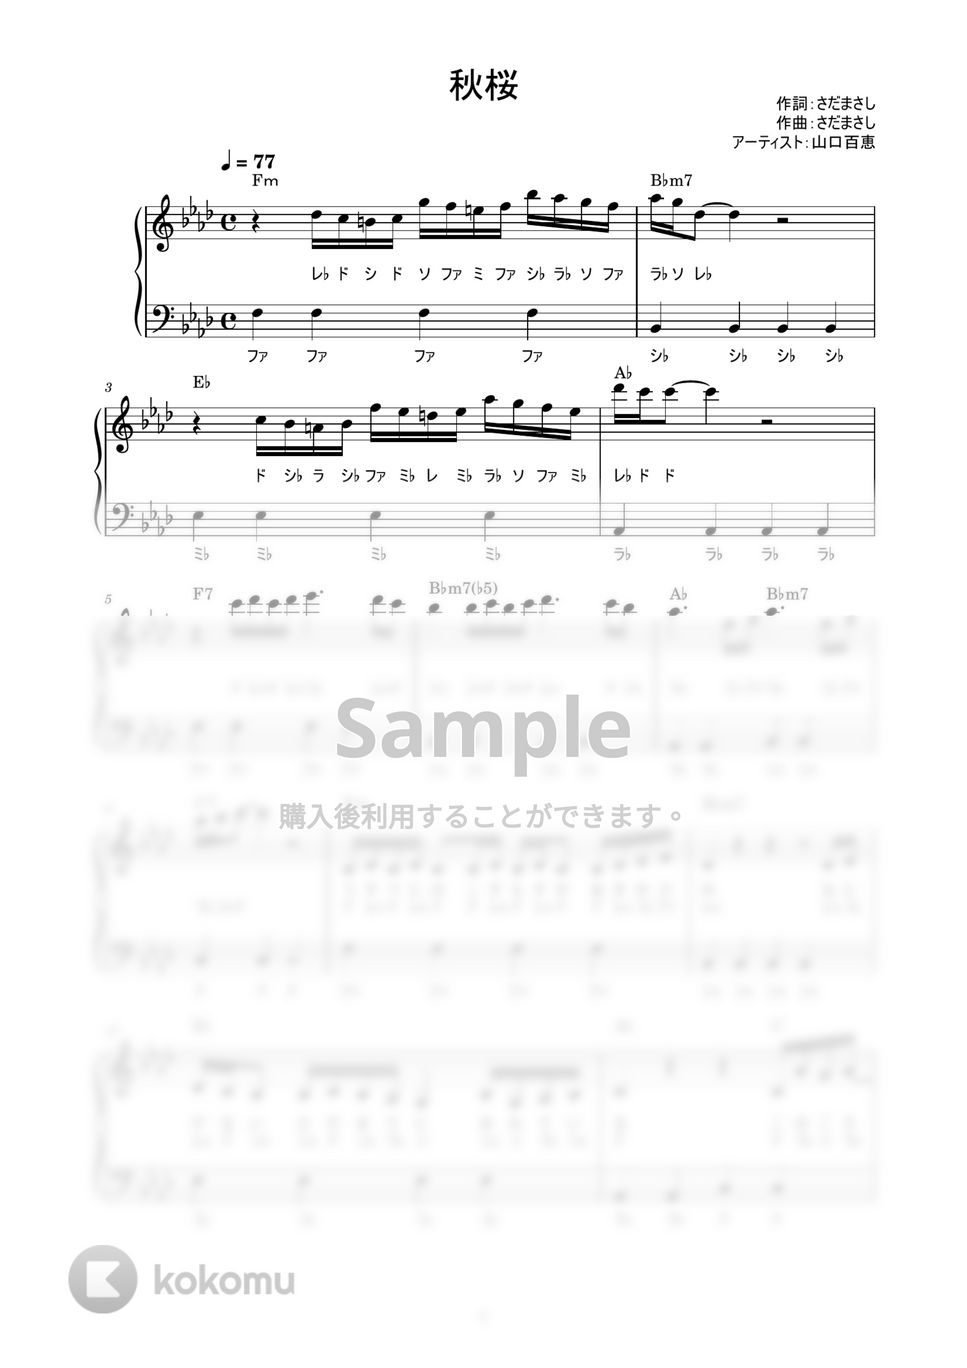 山口百恵 - 秋桜 (かんたん / 歌詞付き / ドレミ付き / 初心者) by piano.tokyo